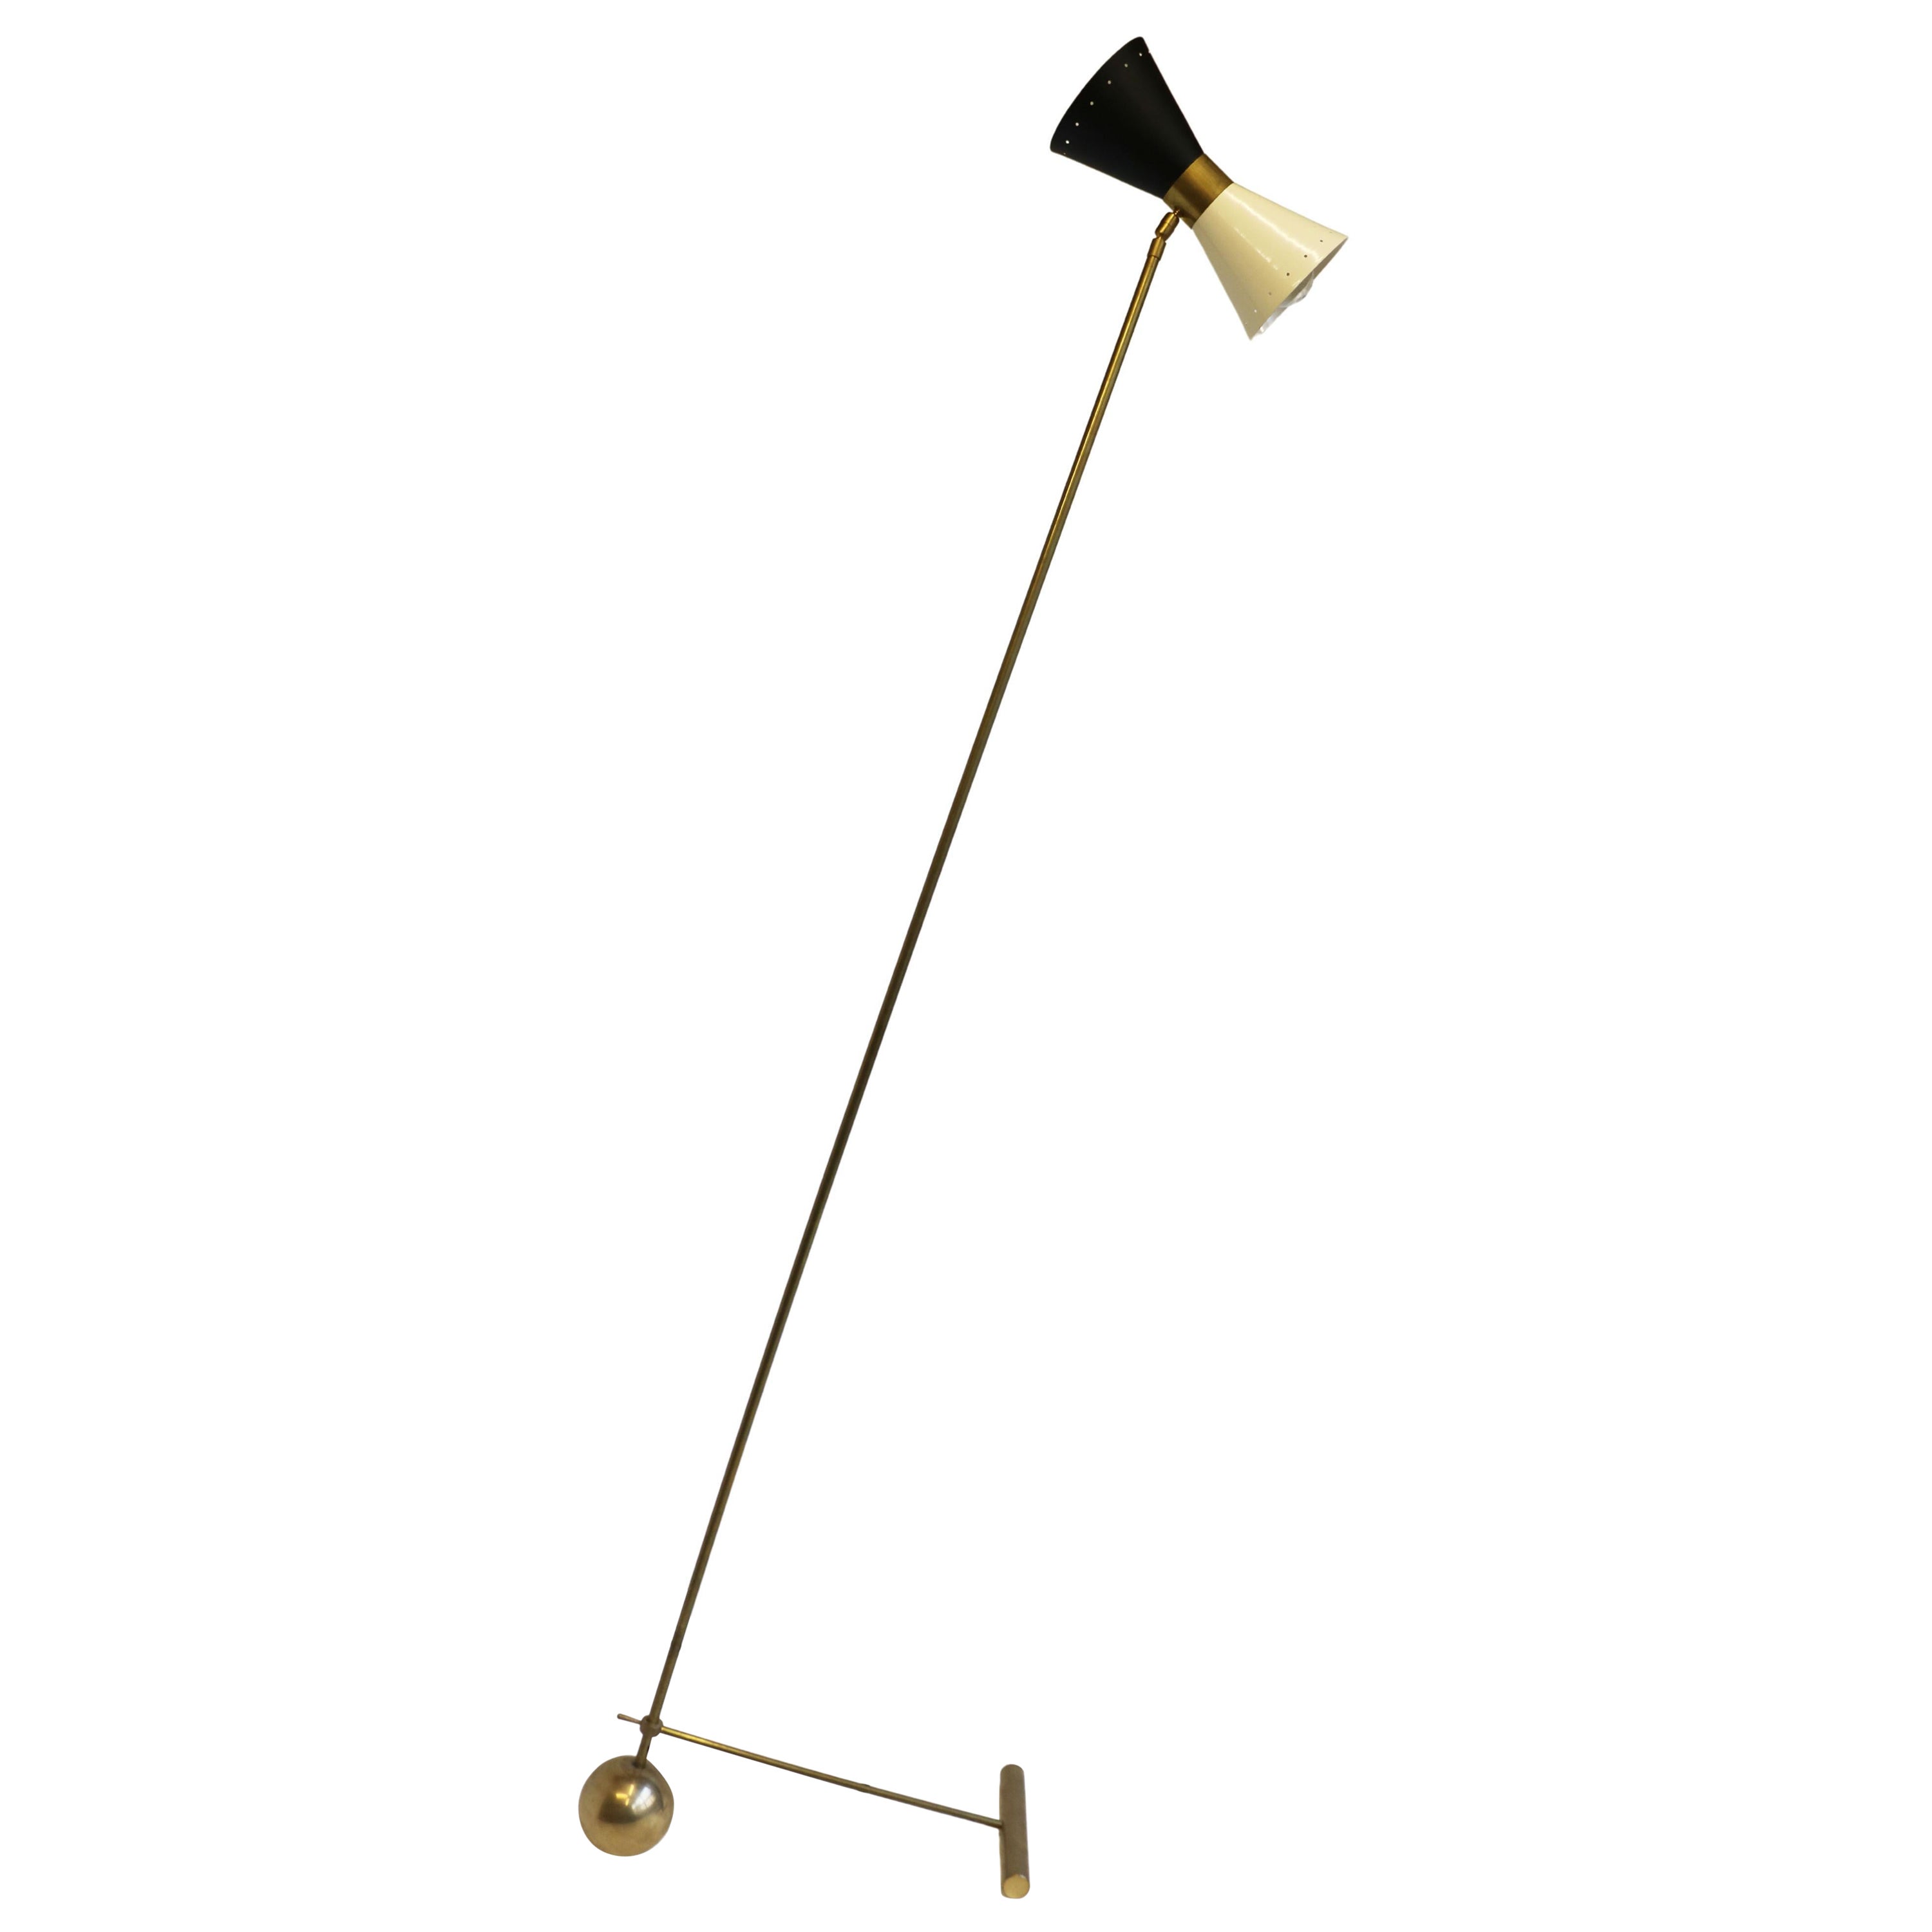 Minimalist Italian Floor Lamp Stilnovo Style 1950 Brass Mid Century Design Light